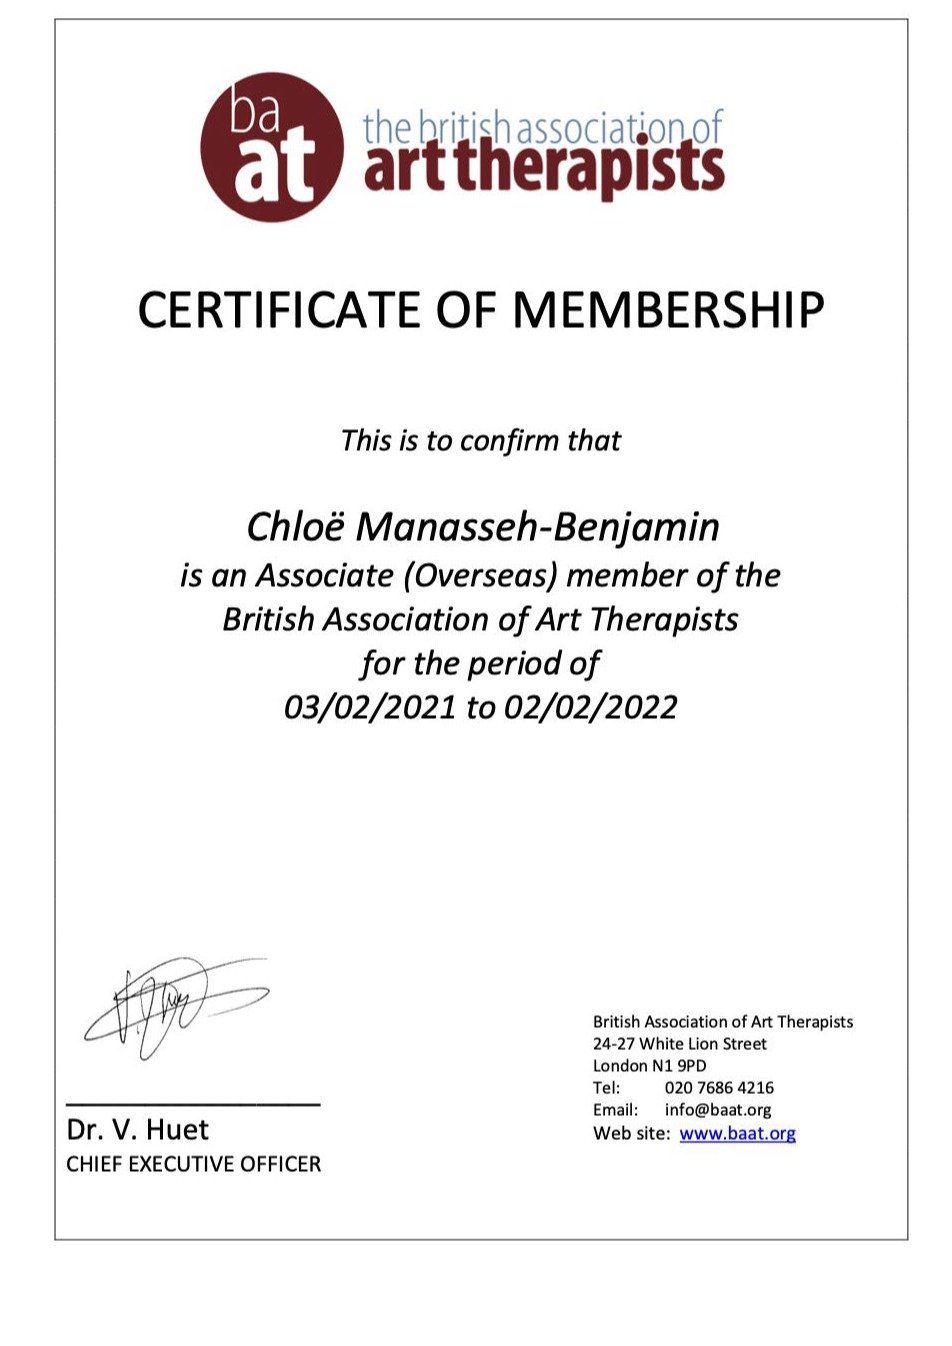 BAAT Certificate of Membership